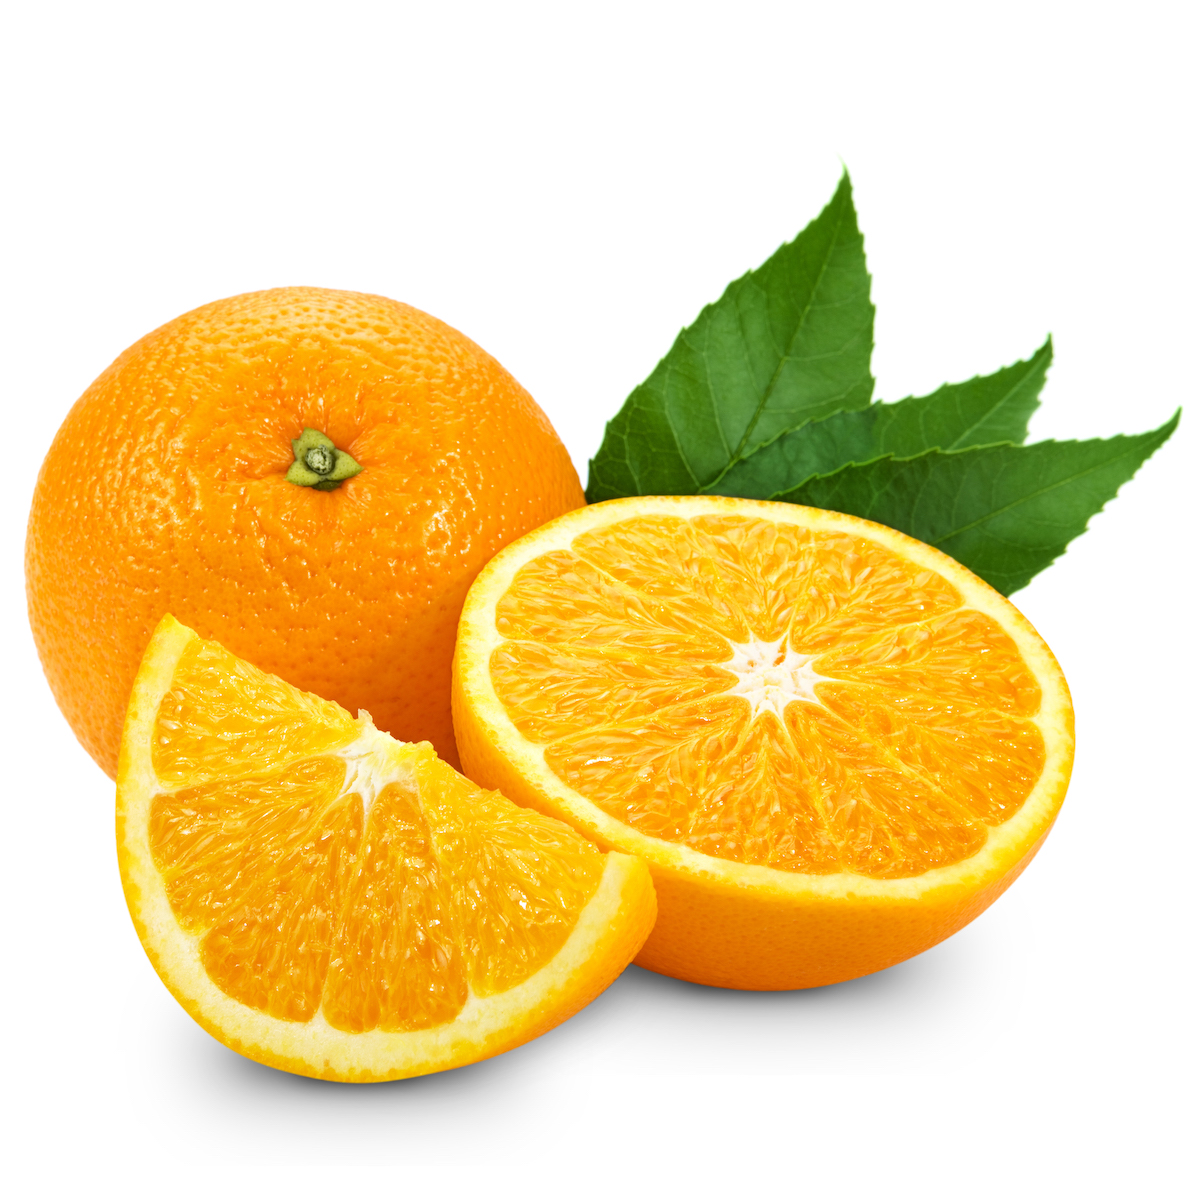 One whole orange, one orange half, and one orange wedge on a white background.